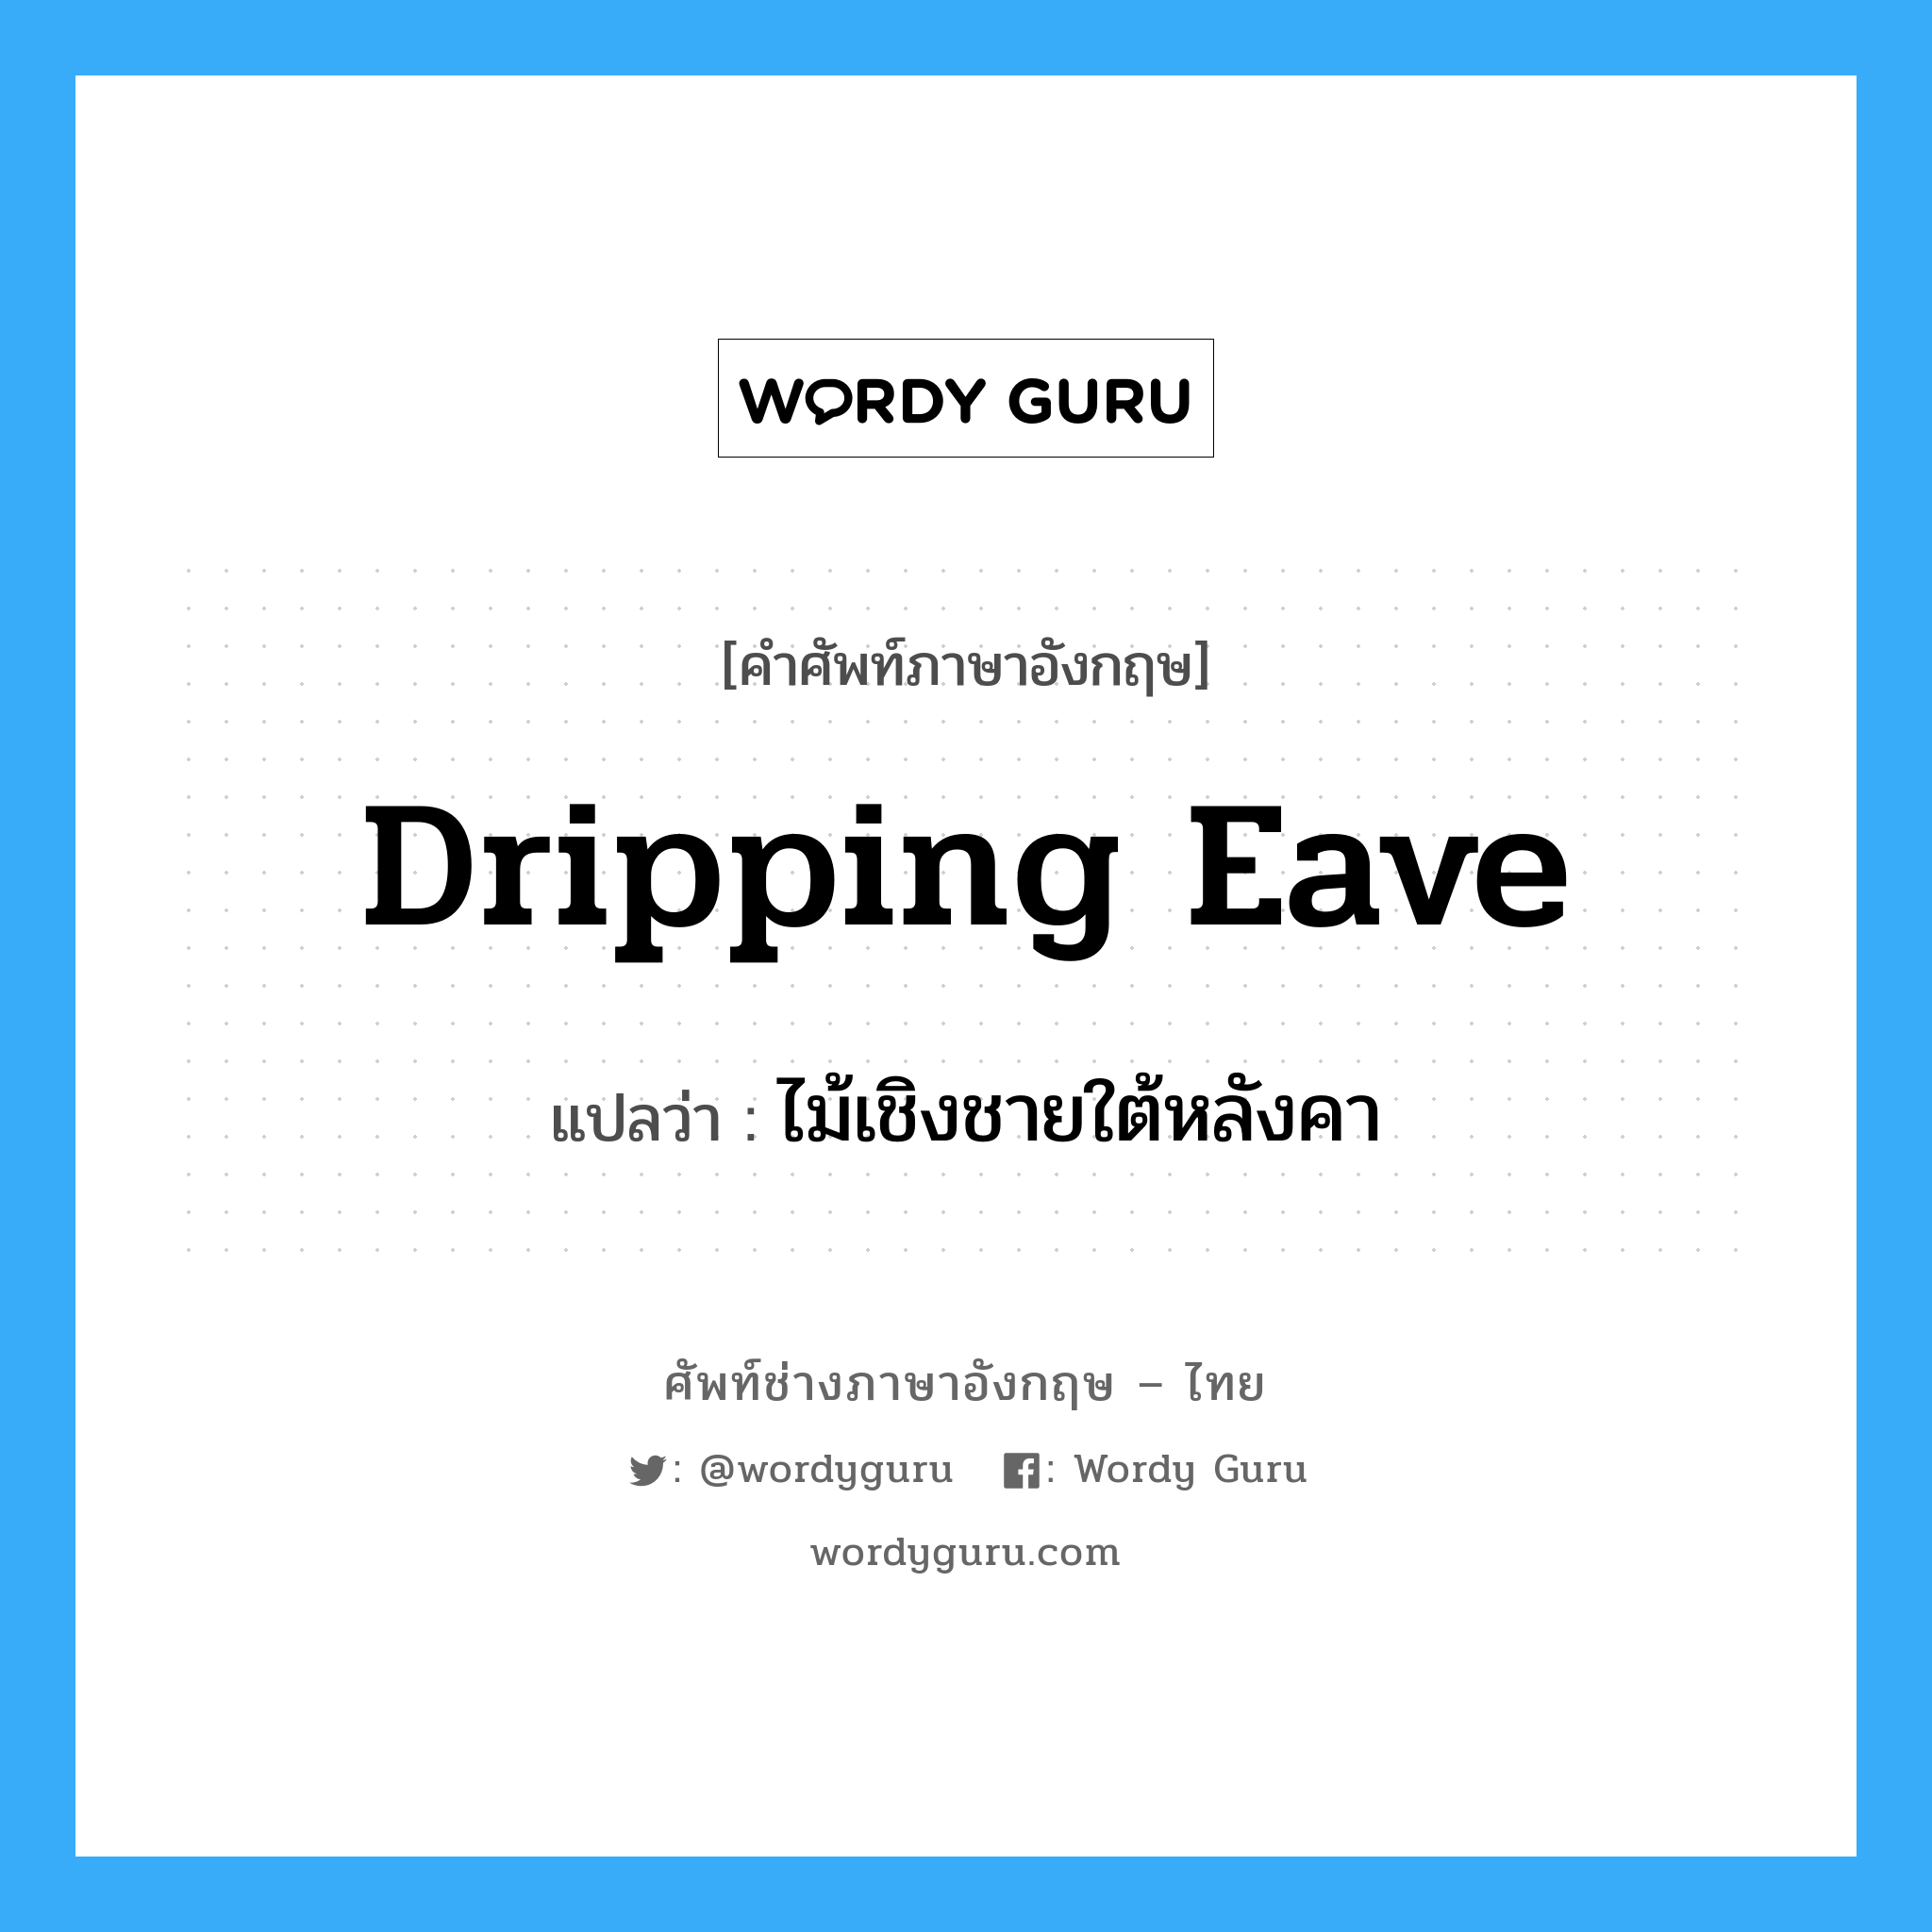 dripping eave แปลว่า?, คำศัพท์ช่างภาษาอังกฤษ - ไทย dripping eave คำศัพท์ภาษาอังกฤษ dripping eave แปลว่า ไม้เชิงชายใต้หลังคา